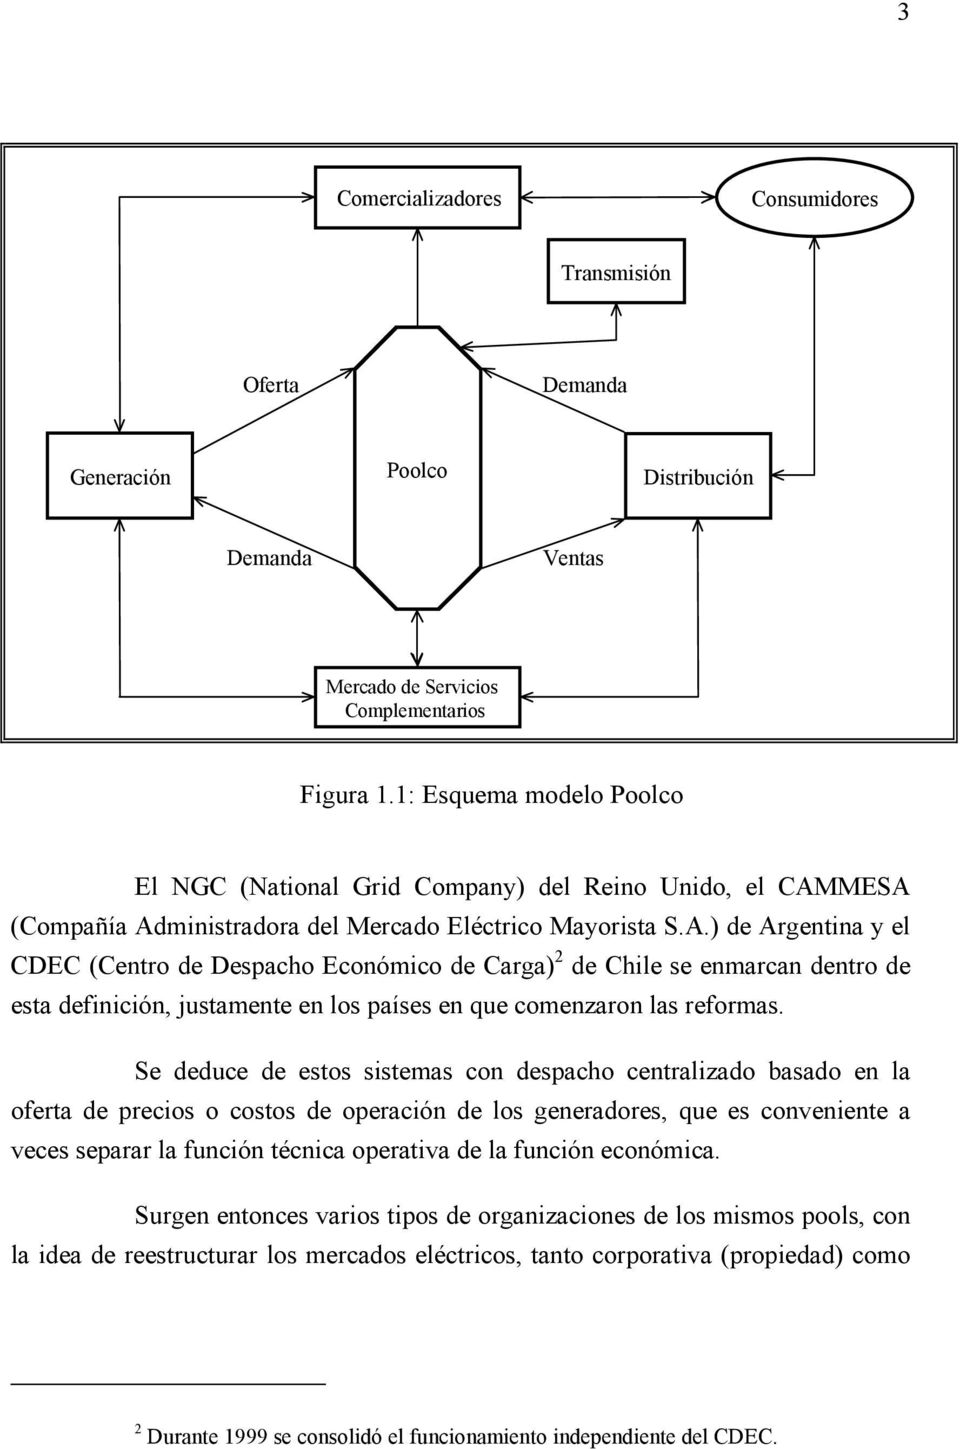 MESA (Compañía Admnstradora del Mercado Eléctrco Mayorsta S.A.) de Argentna y el CDEC (Centro de Despacho Económco de Carga) de Chle se enmarcan dentro de esta defncón, ustamente en los países en que comenzaron las reformas.